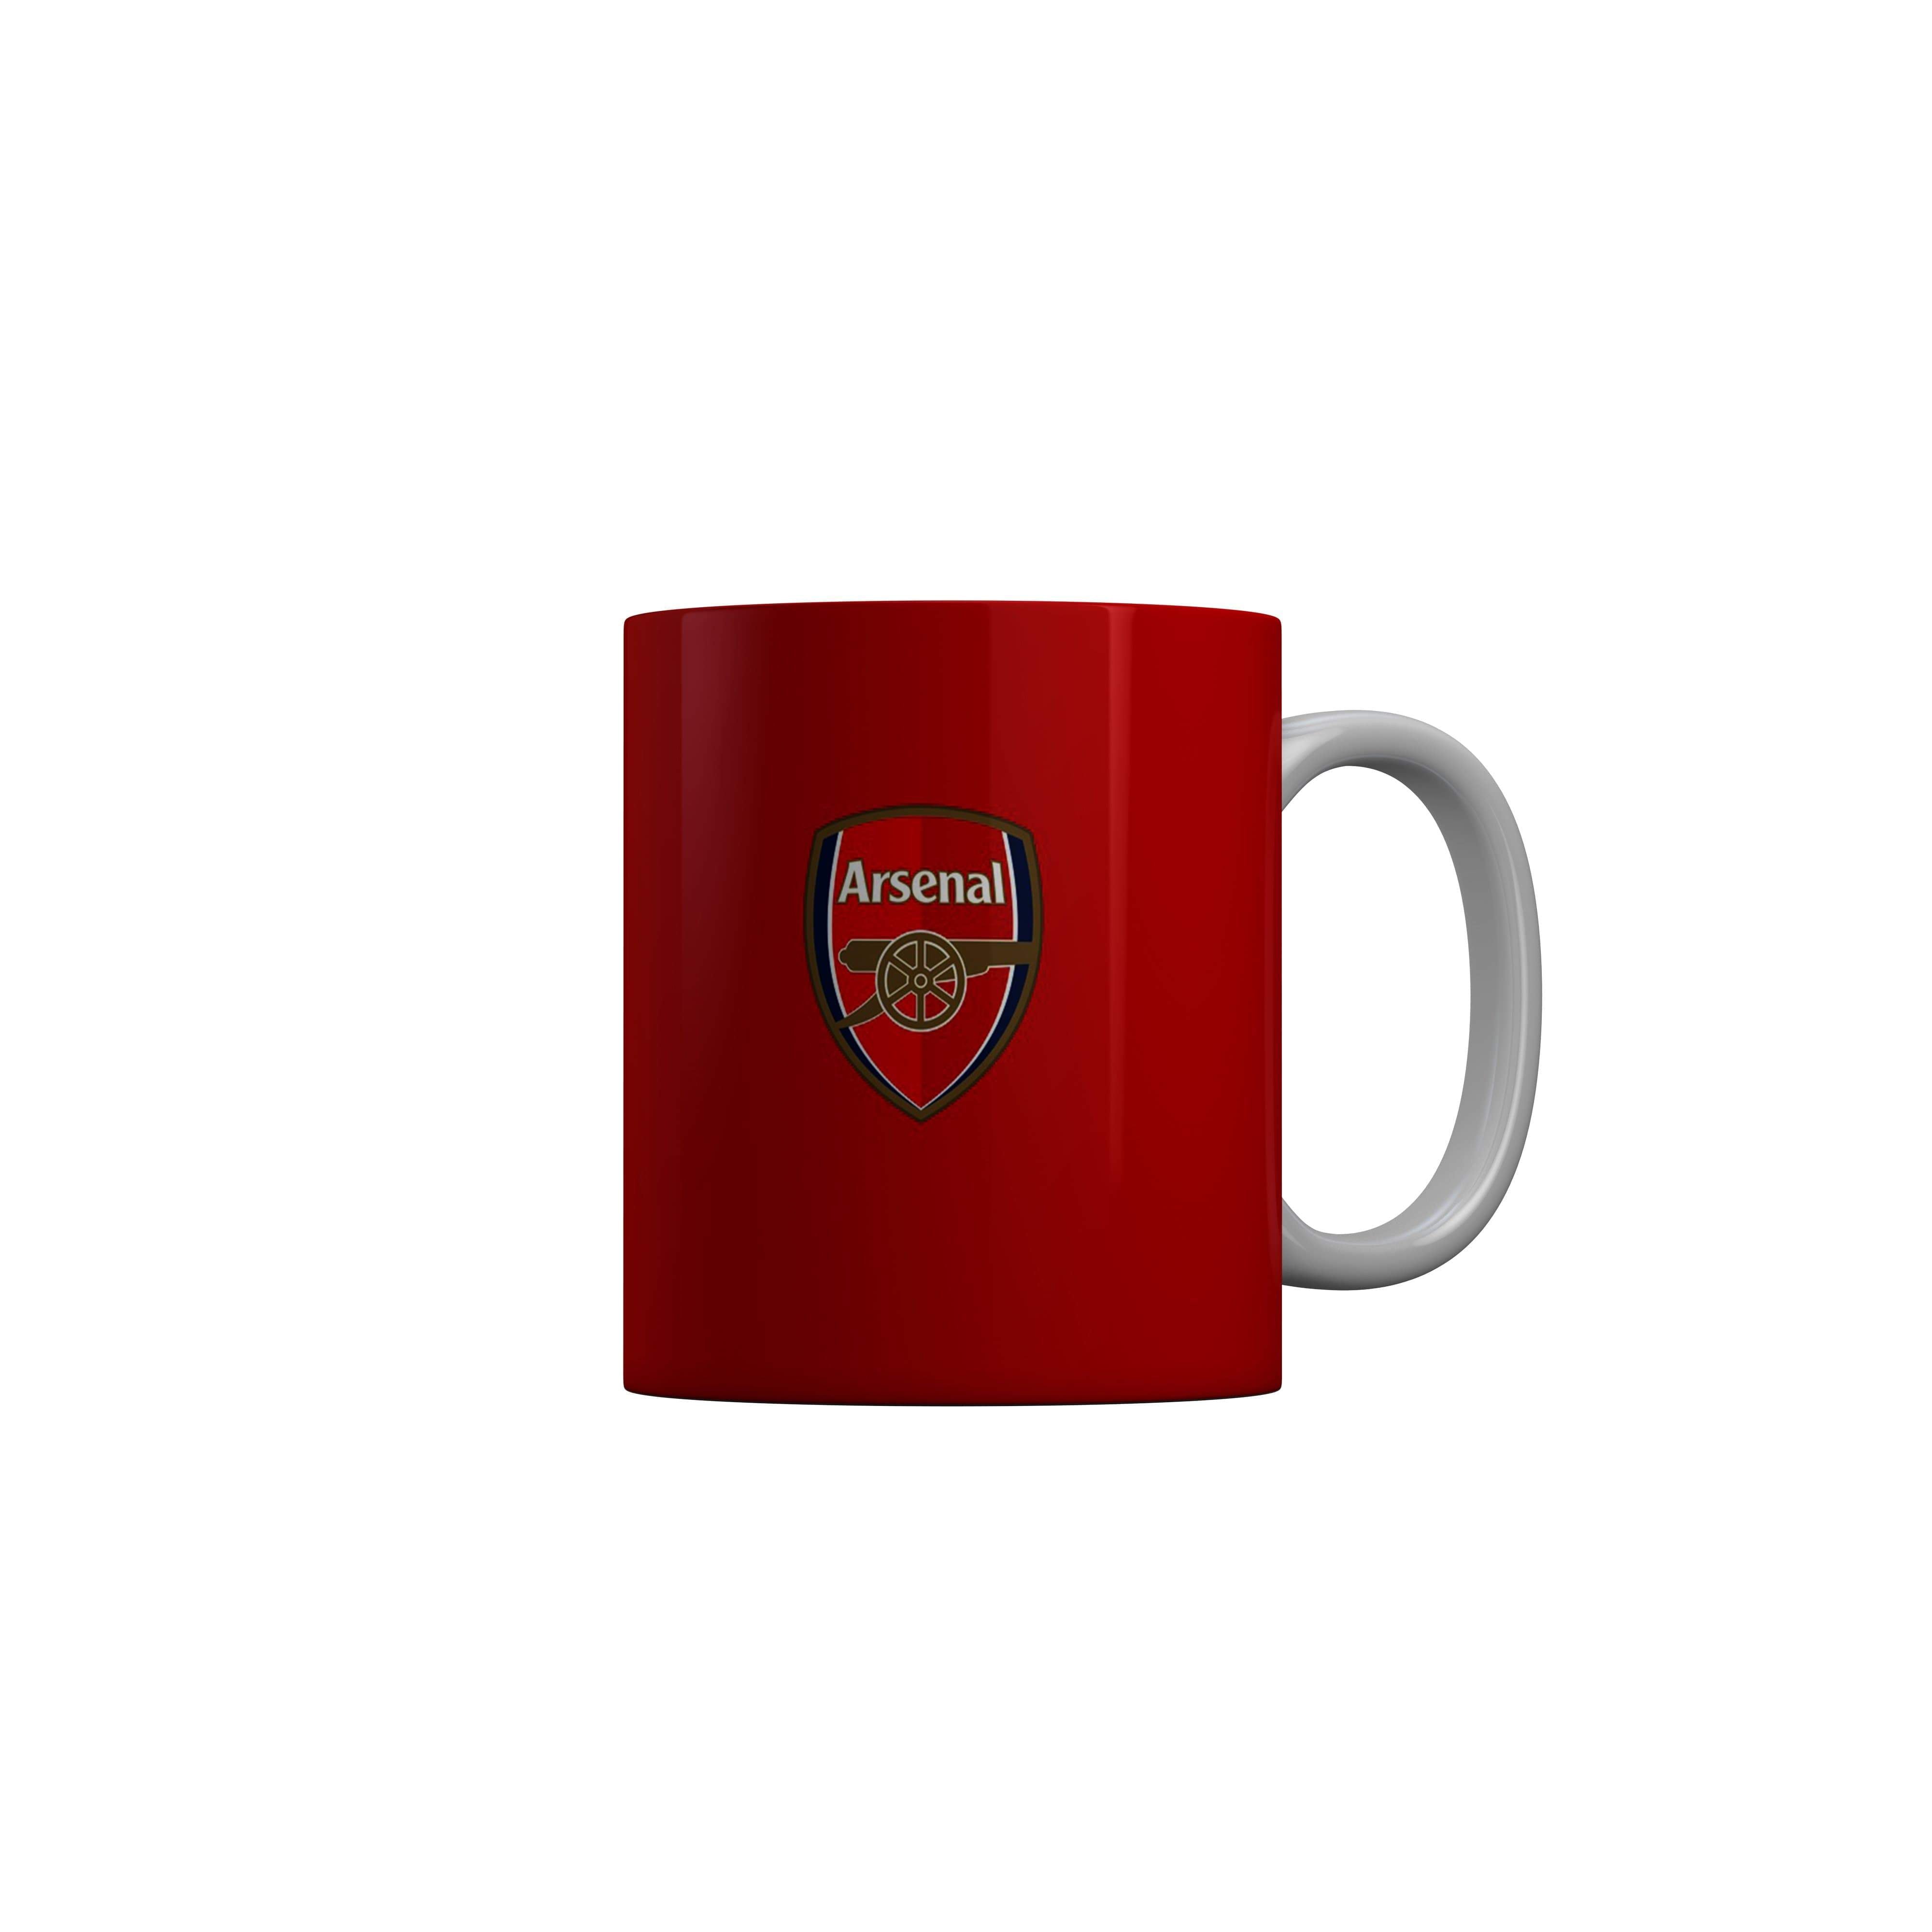 FashionRazor Arsenal Red Ceramic Coffee Mug Football Logo Mug FashionRazor